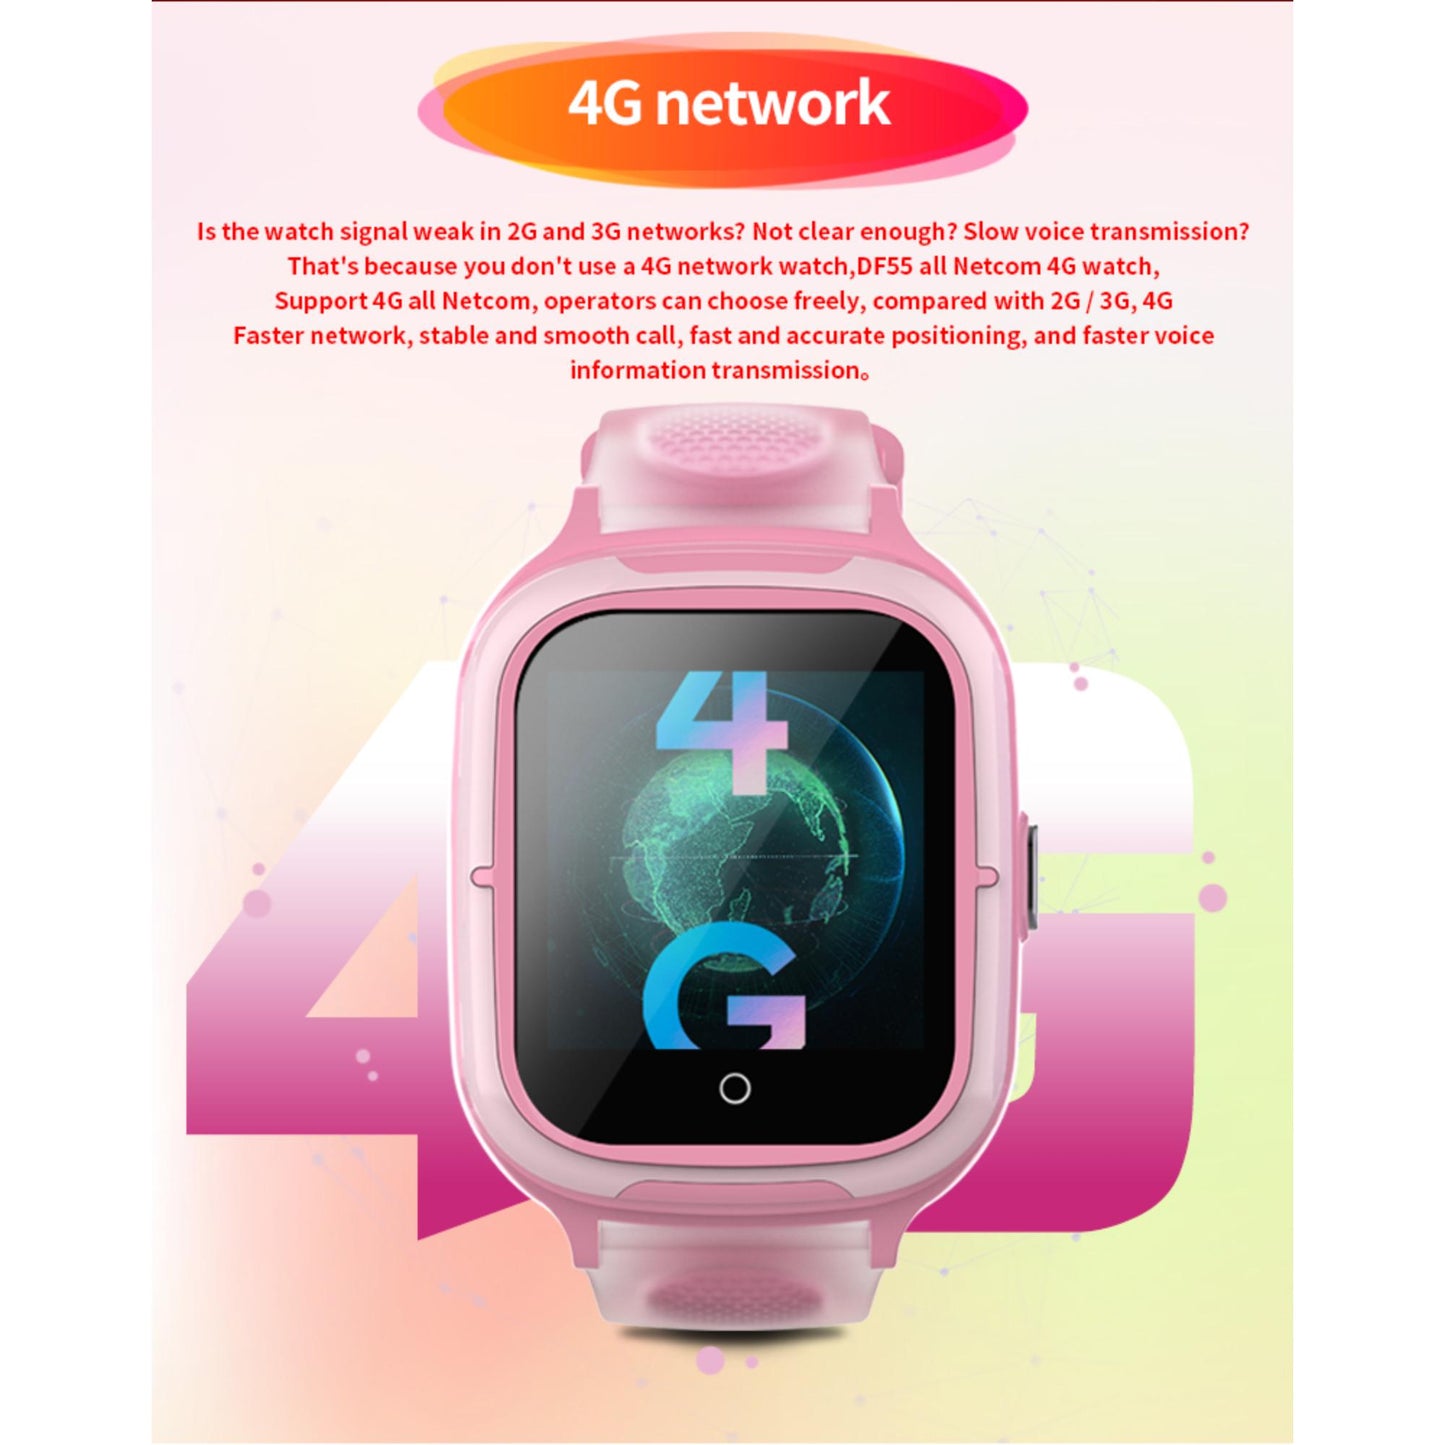 Valdus DF55 Kinder Smartwatch mit 4G(FDD+TDD) Unterstützung, Positioning GPS, SOS Funktion, Voice Message. | Blue Chilli Electronics.